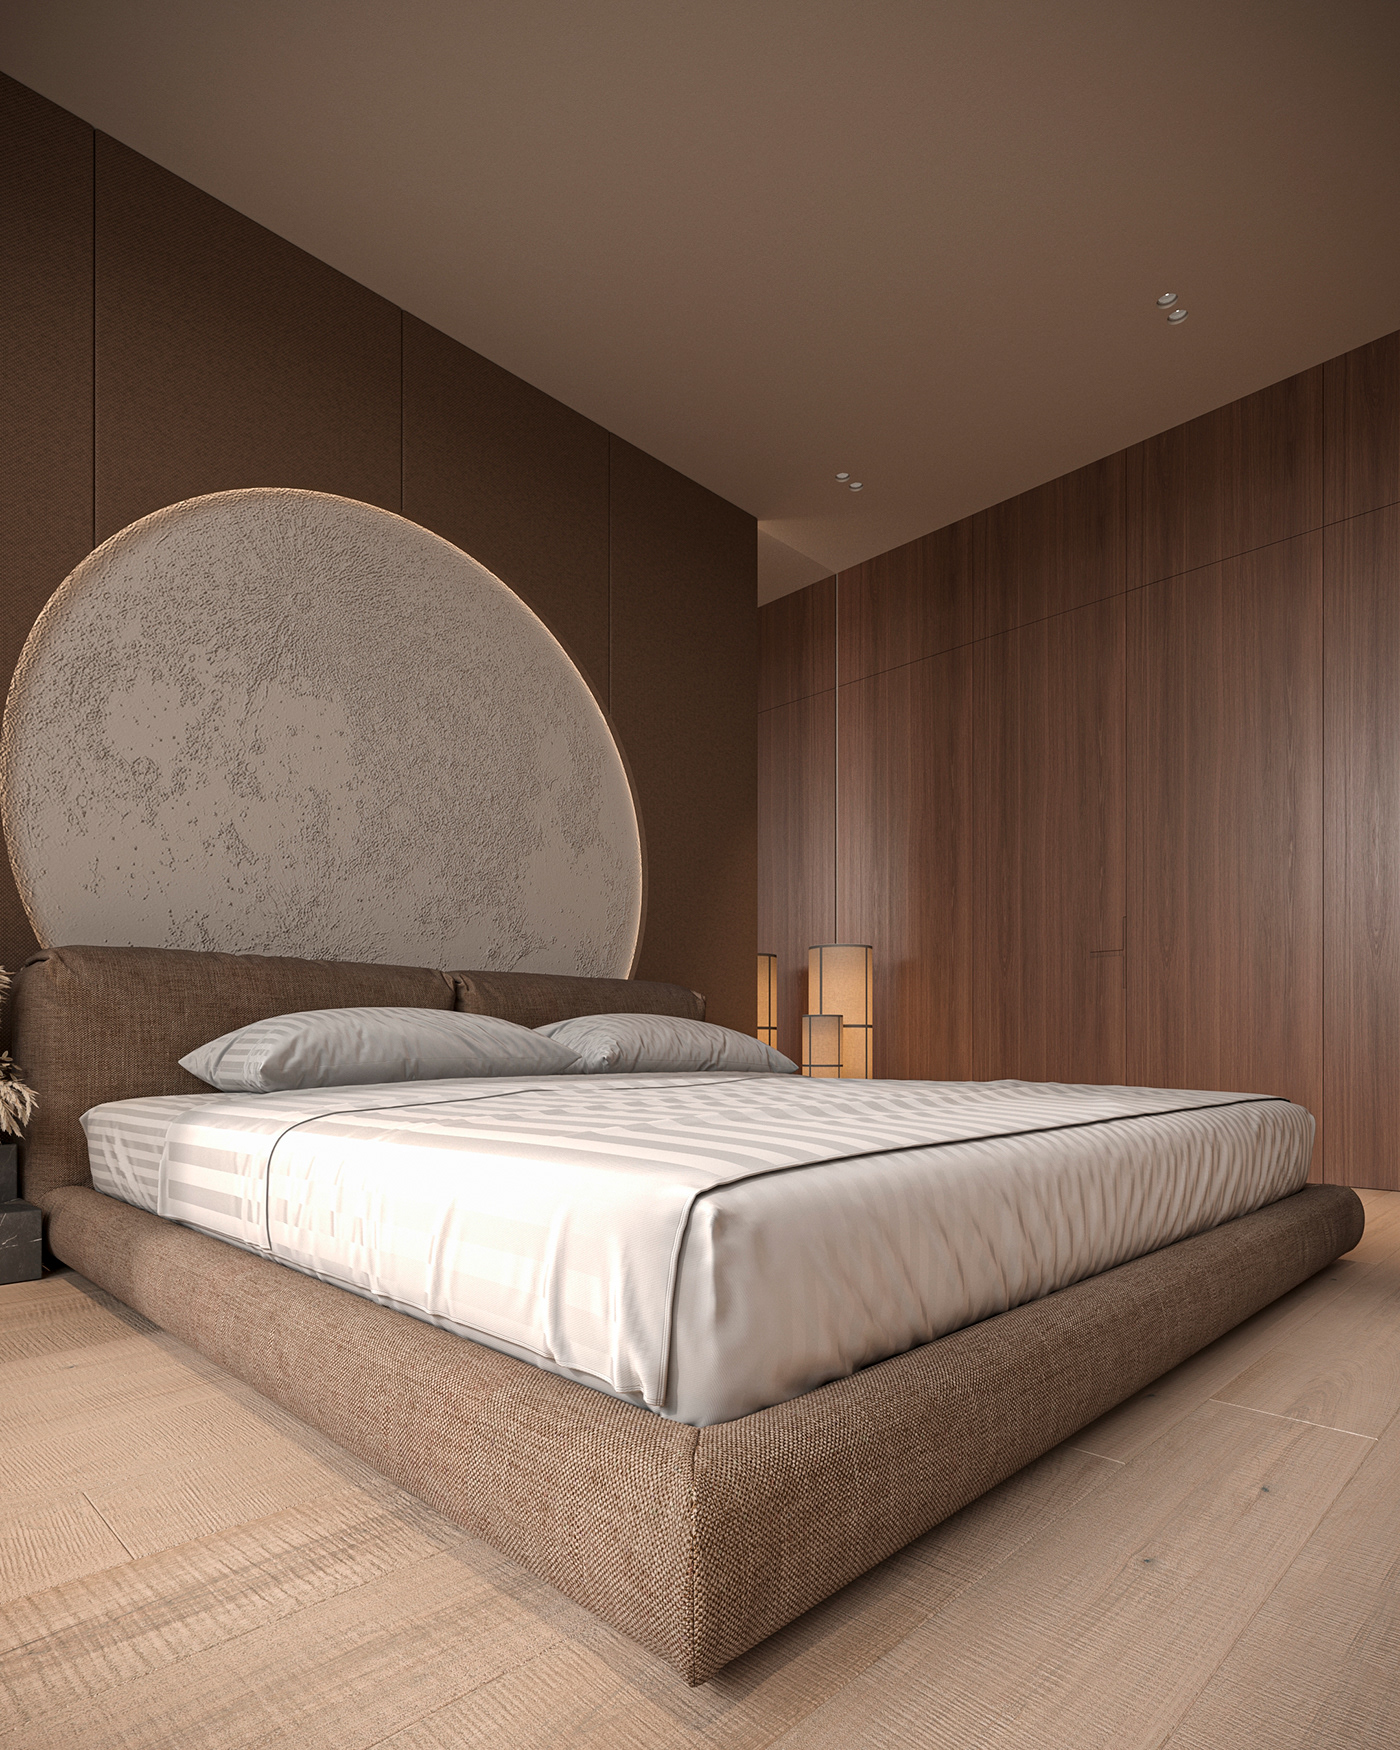 bedroom Bedroom interior bedroom design bedroom interior design bedroomdesign Bedroom minimalism Minimalism interior aktau kazakhstan astana